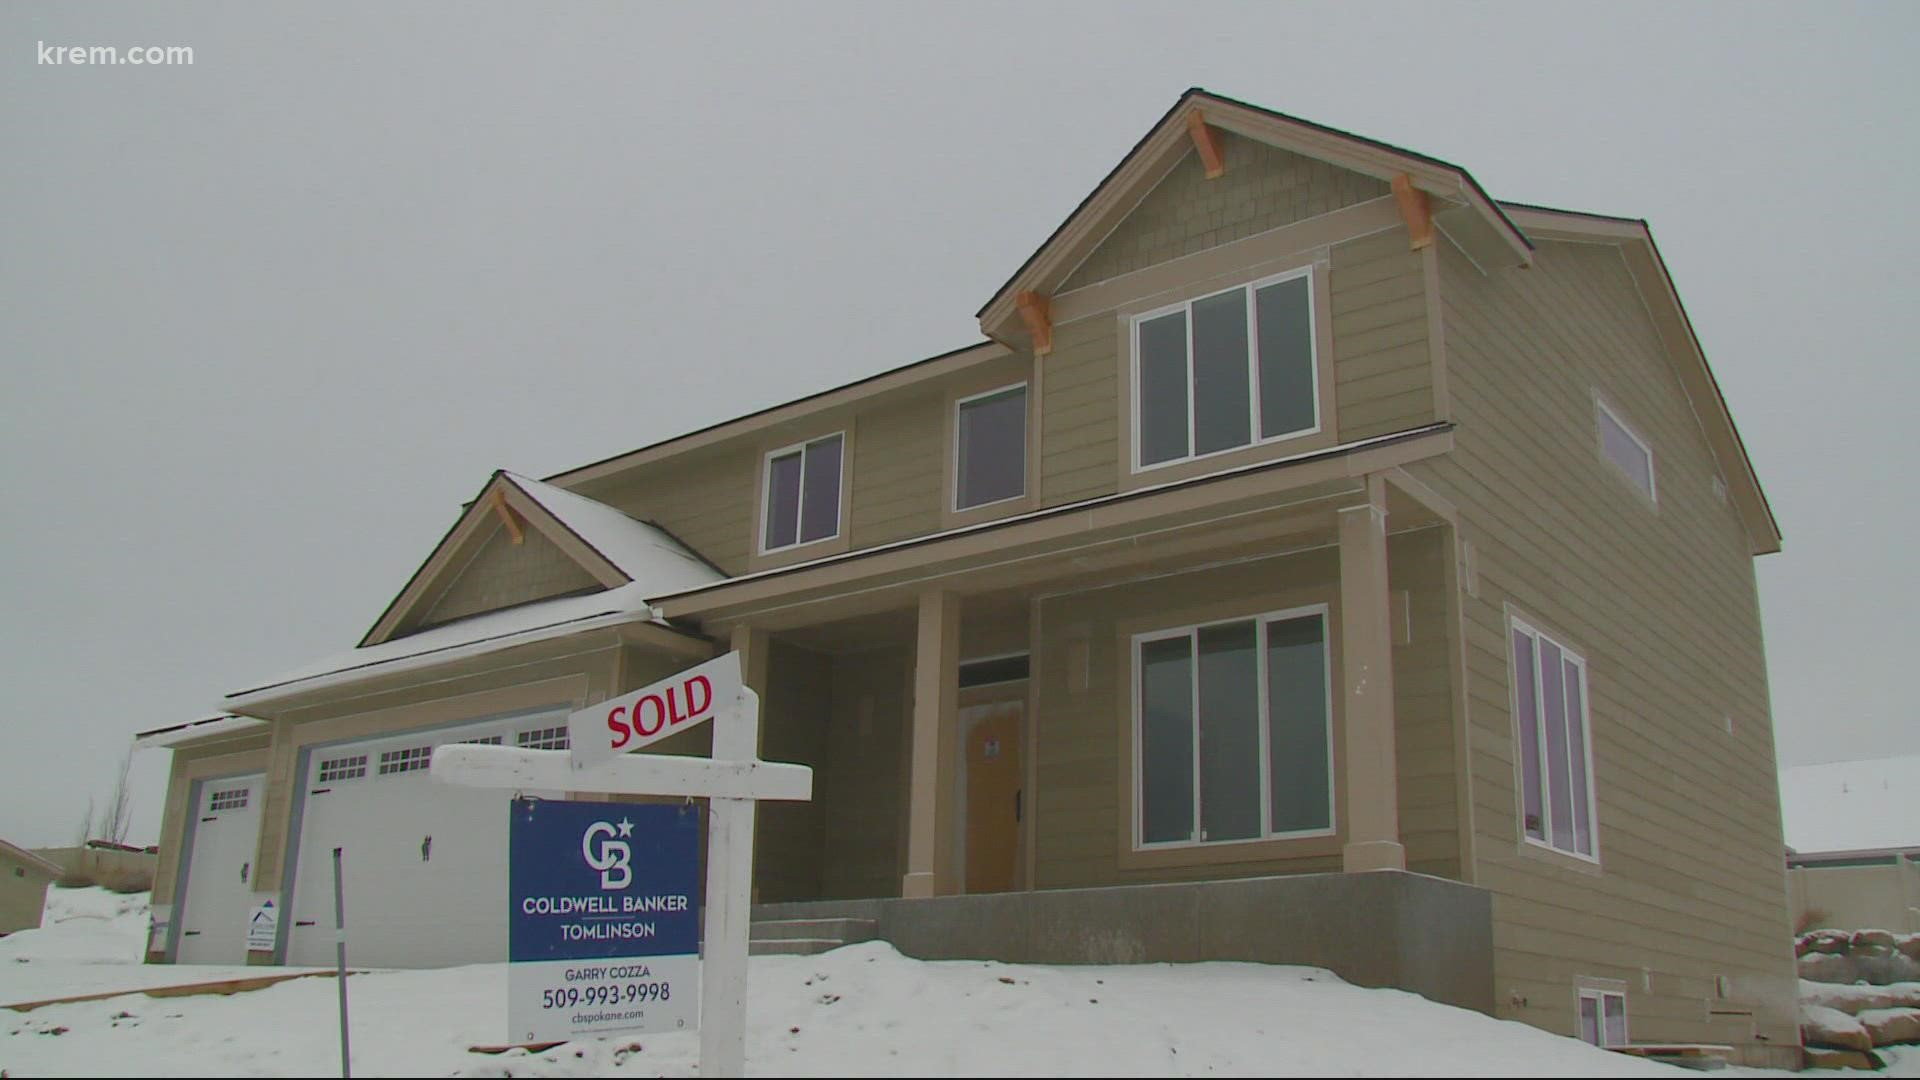 Is Spokane's hot housing market slowing down?